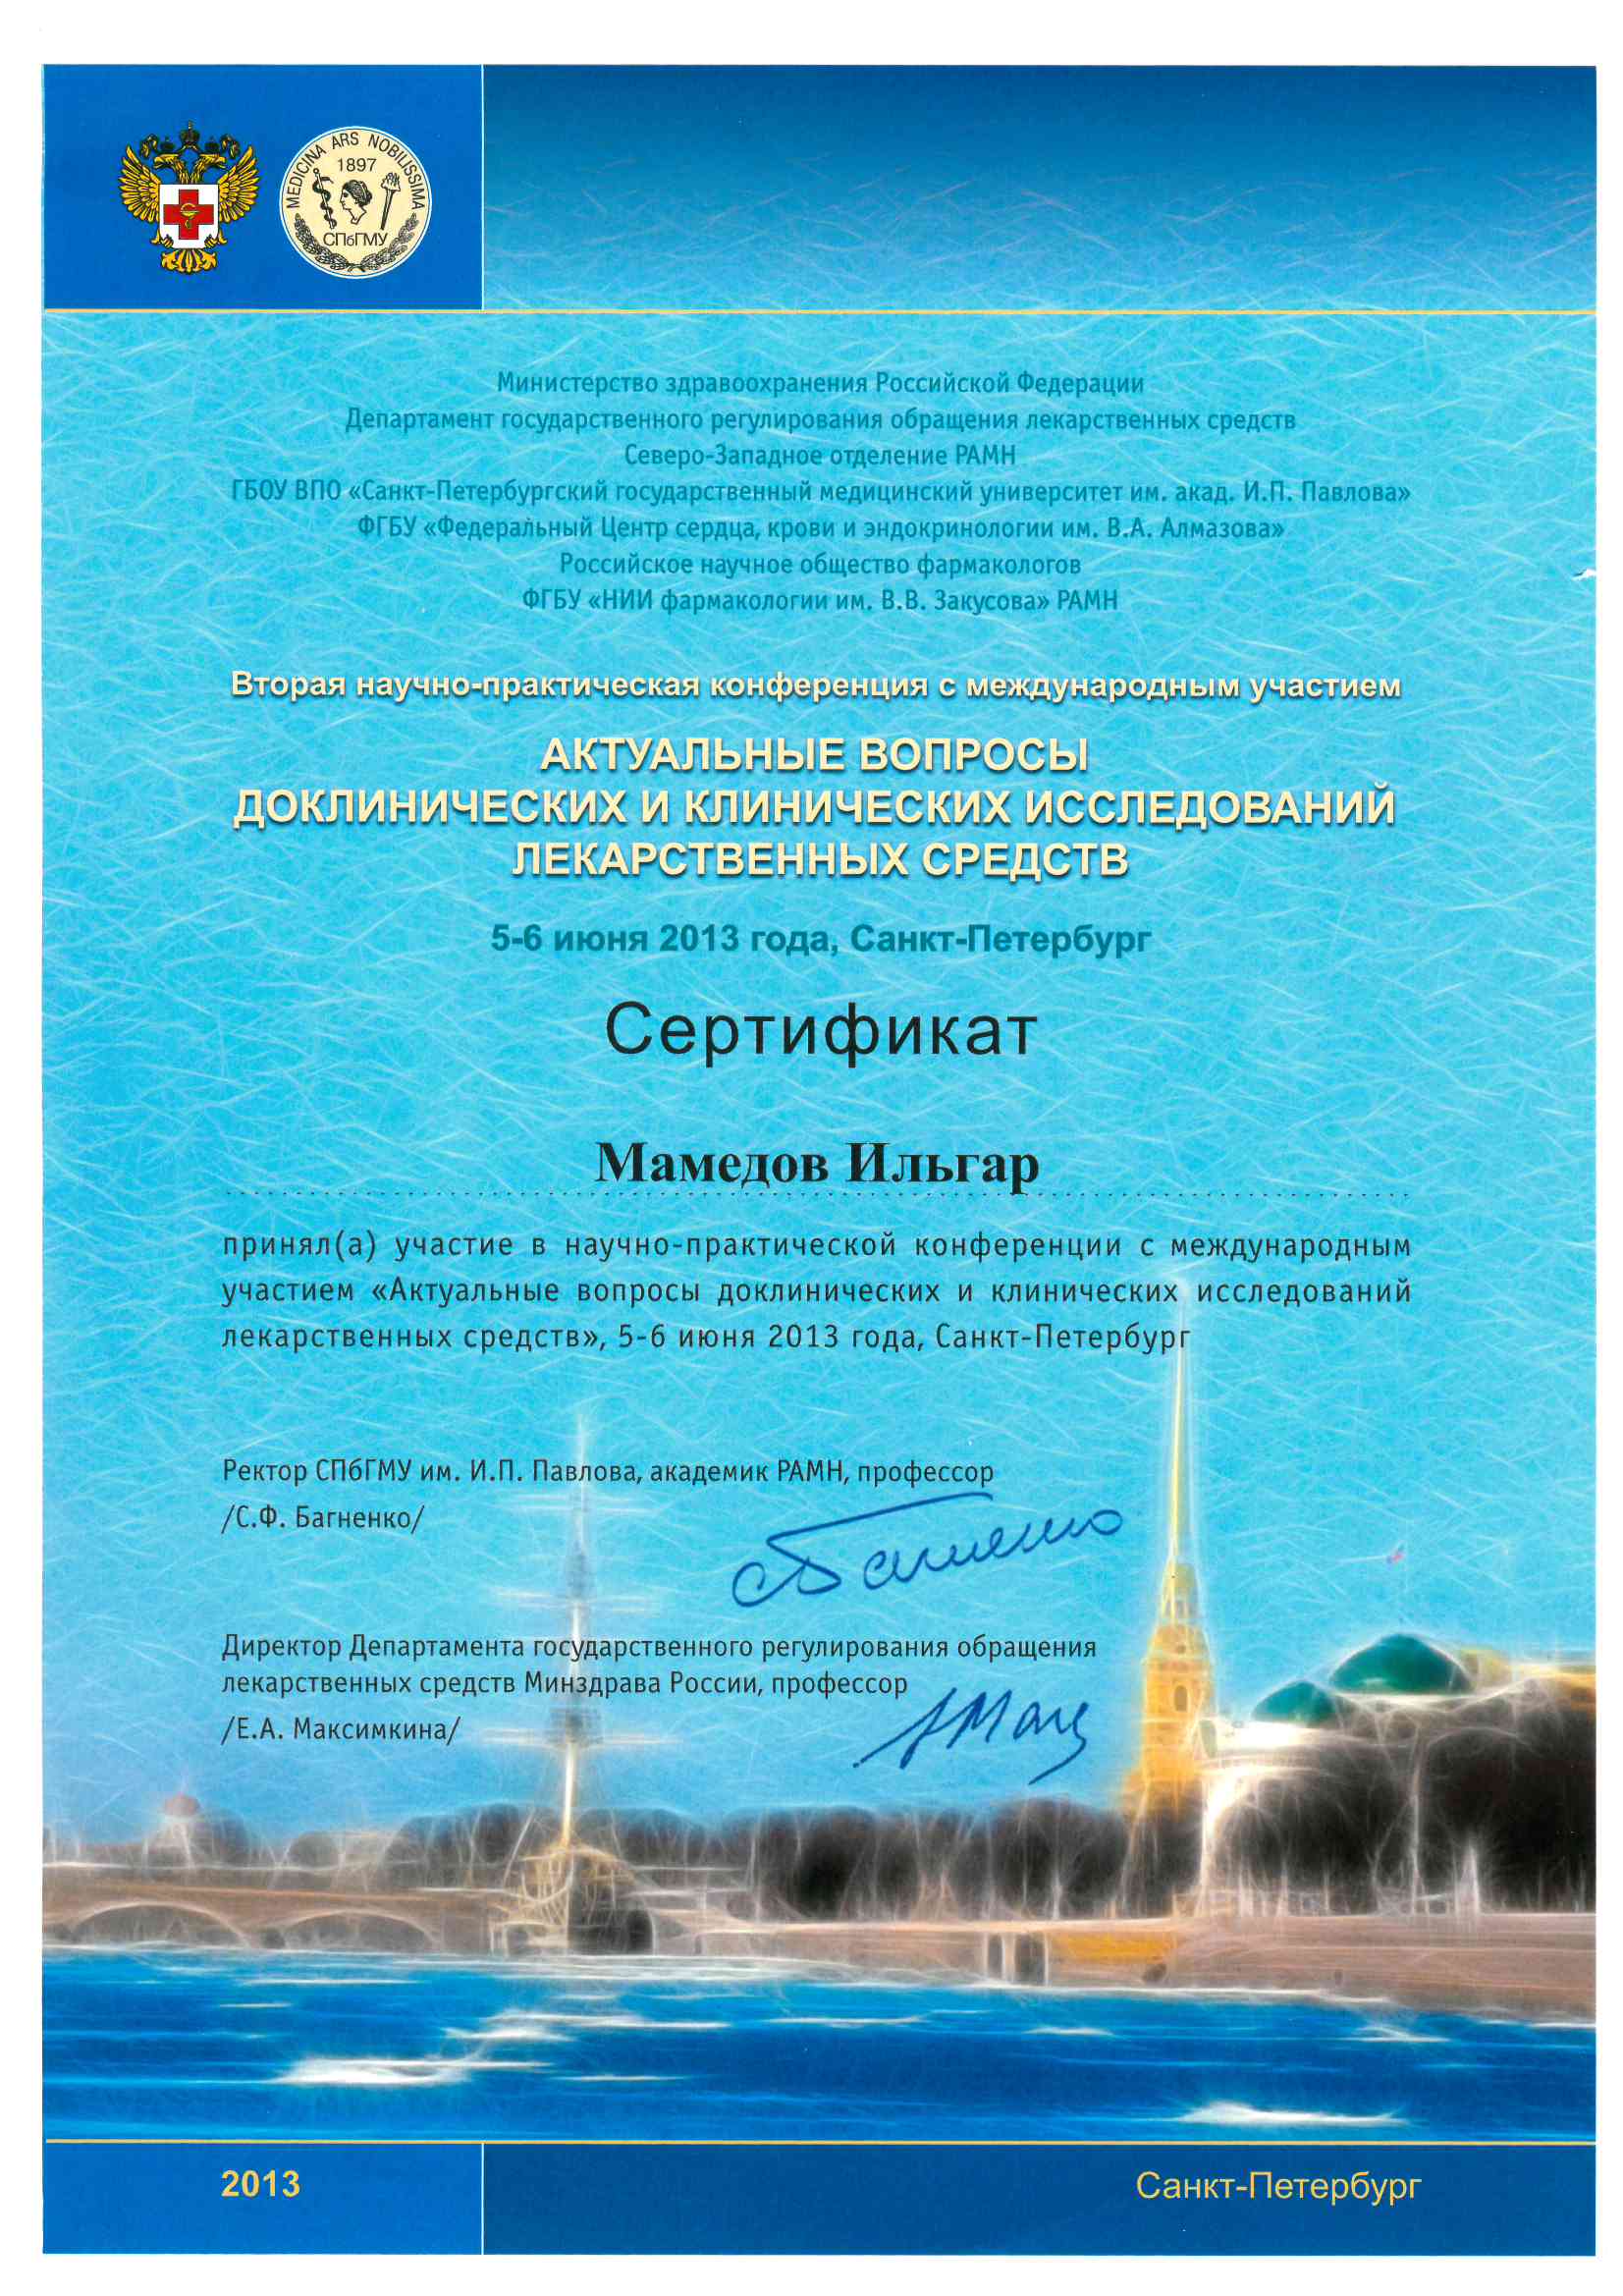 Сертификат участия в научно-практической конференции с международным участием. Актуальные вопросы доклинических и клинических исследований лекарственных средств. 2013.